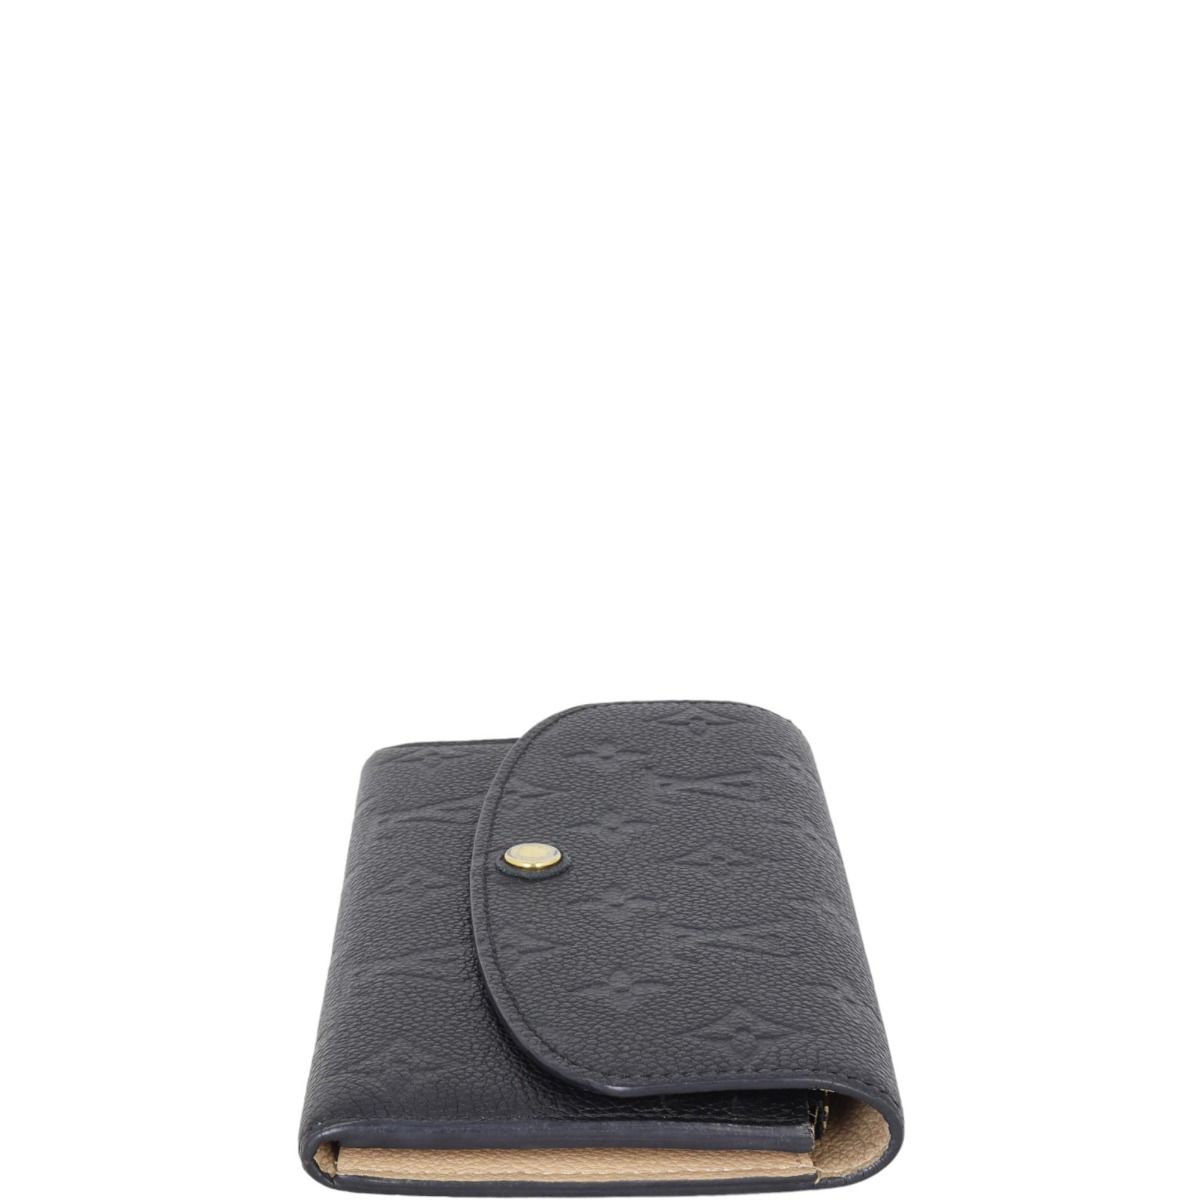 Louis Vuitton Wallet Emilie Monogram Empreinte Noir Black - US